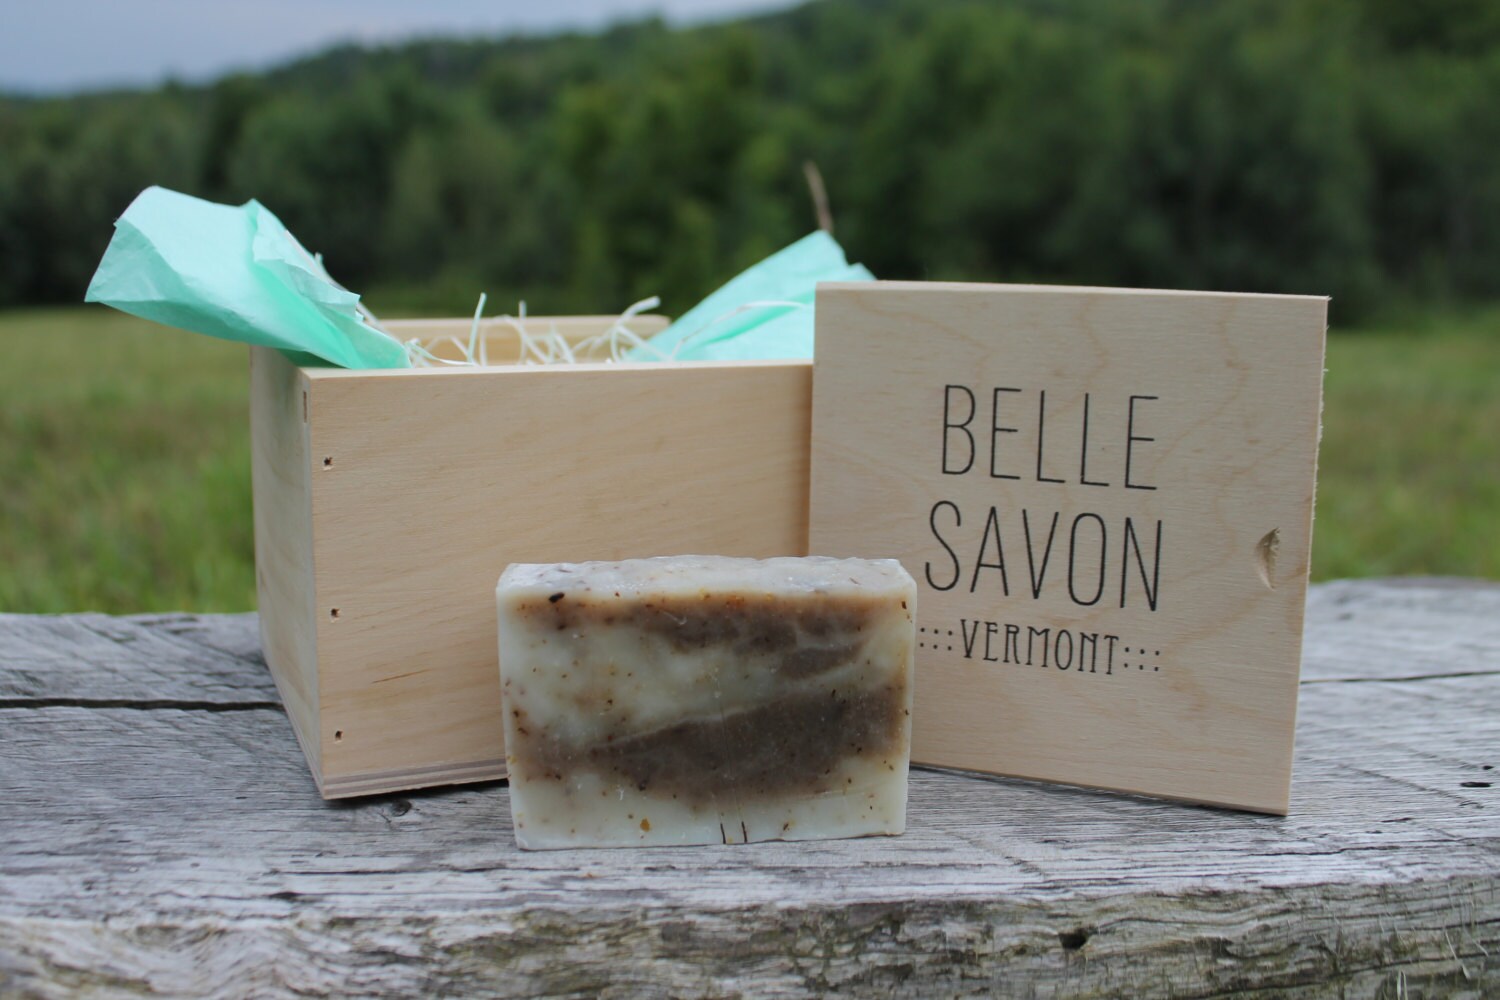 Belle Savon Vermont Artisan Soap Gift Set in VT Wooden Box- Belle Savon Vermont